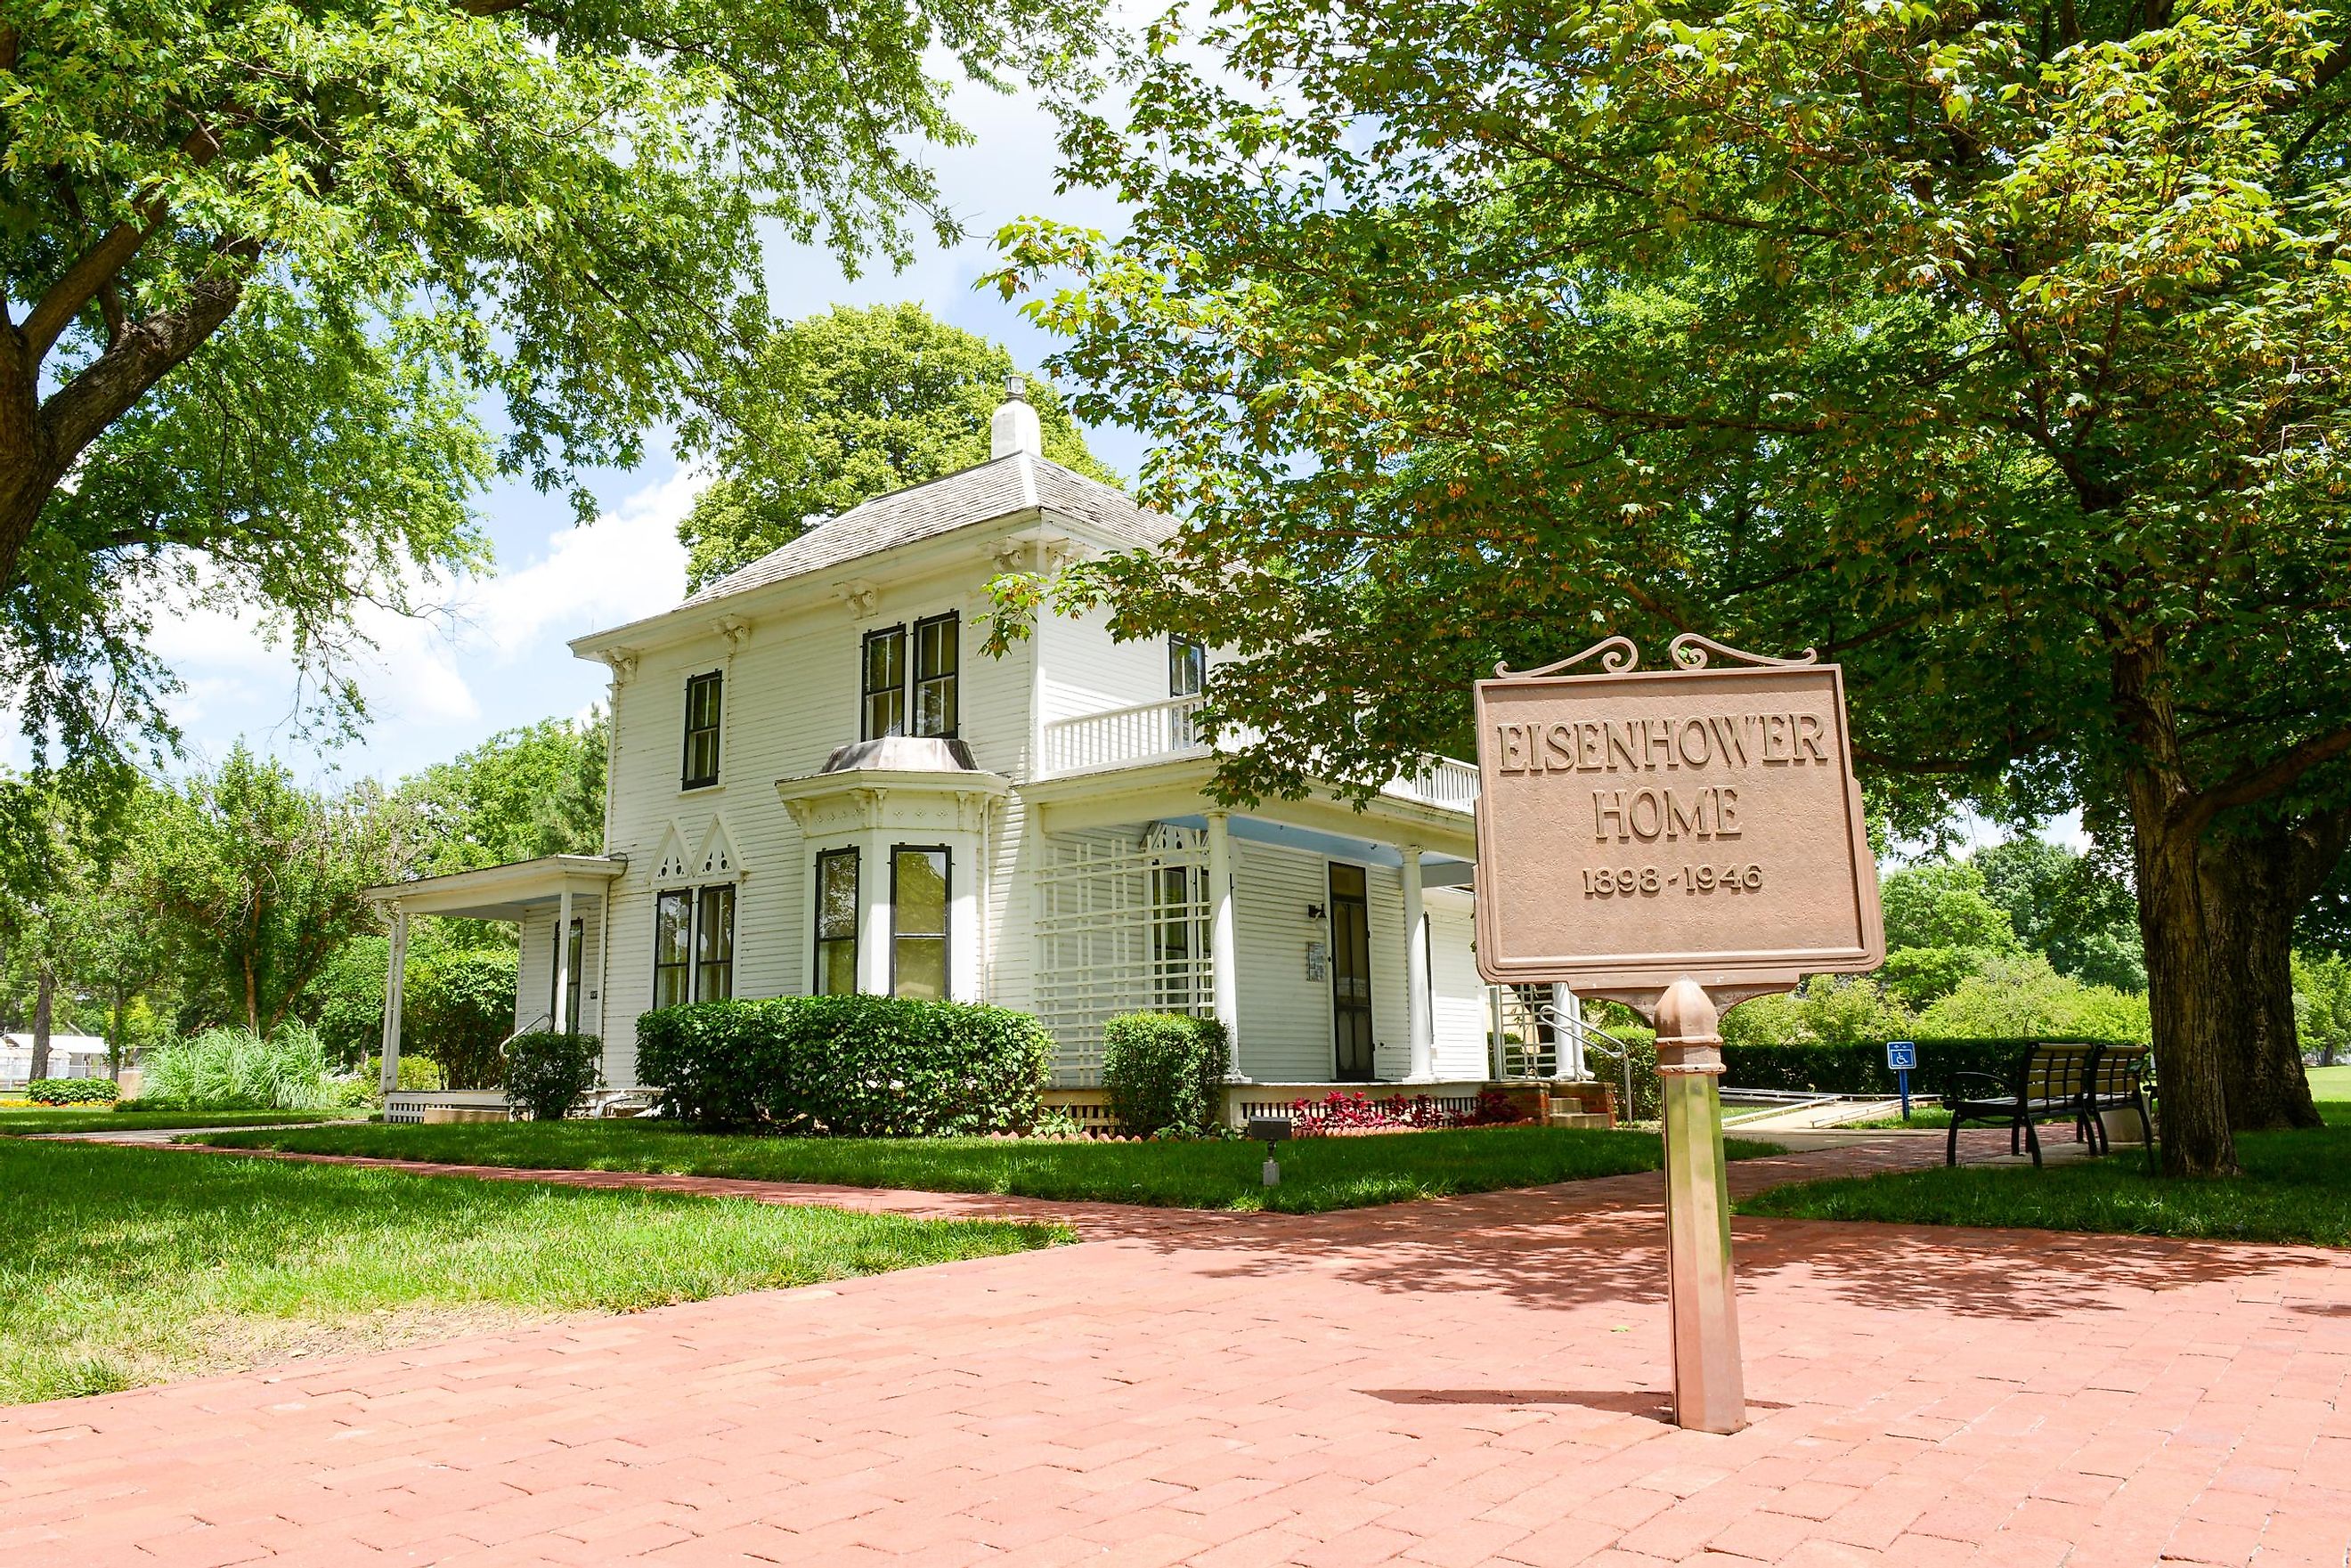 Abilene, Kansas, USA: The house where President Eisenhower grew up. Editorial credit: spoonphol / Shutterstock.com